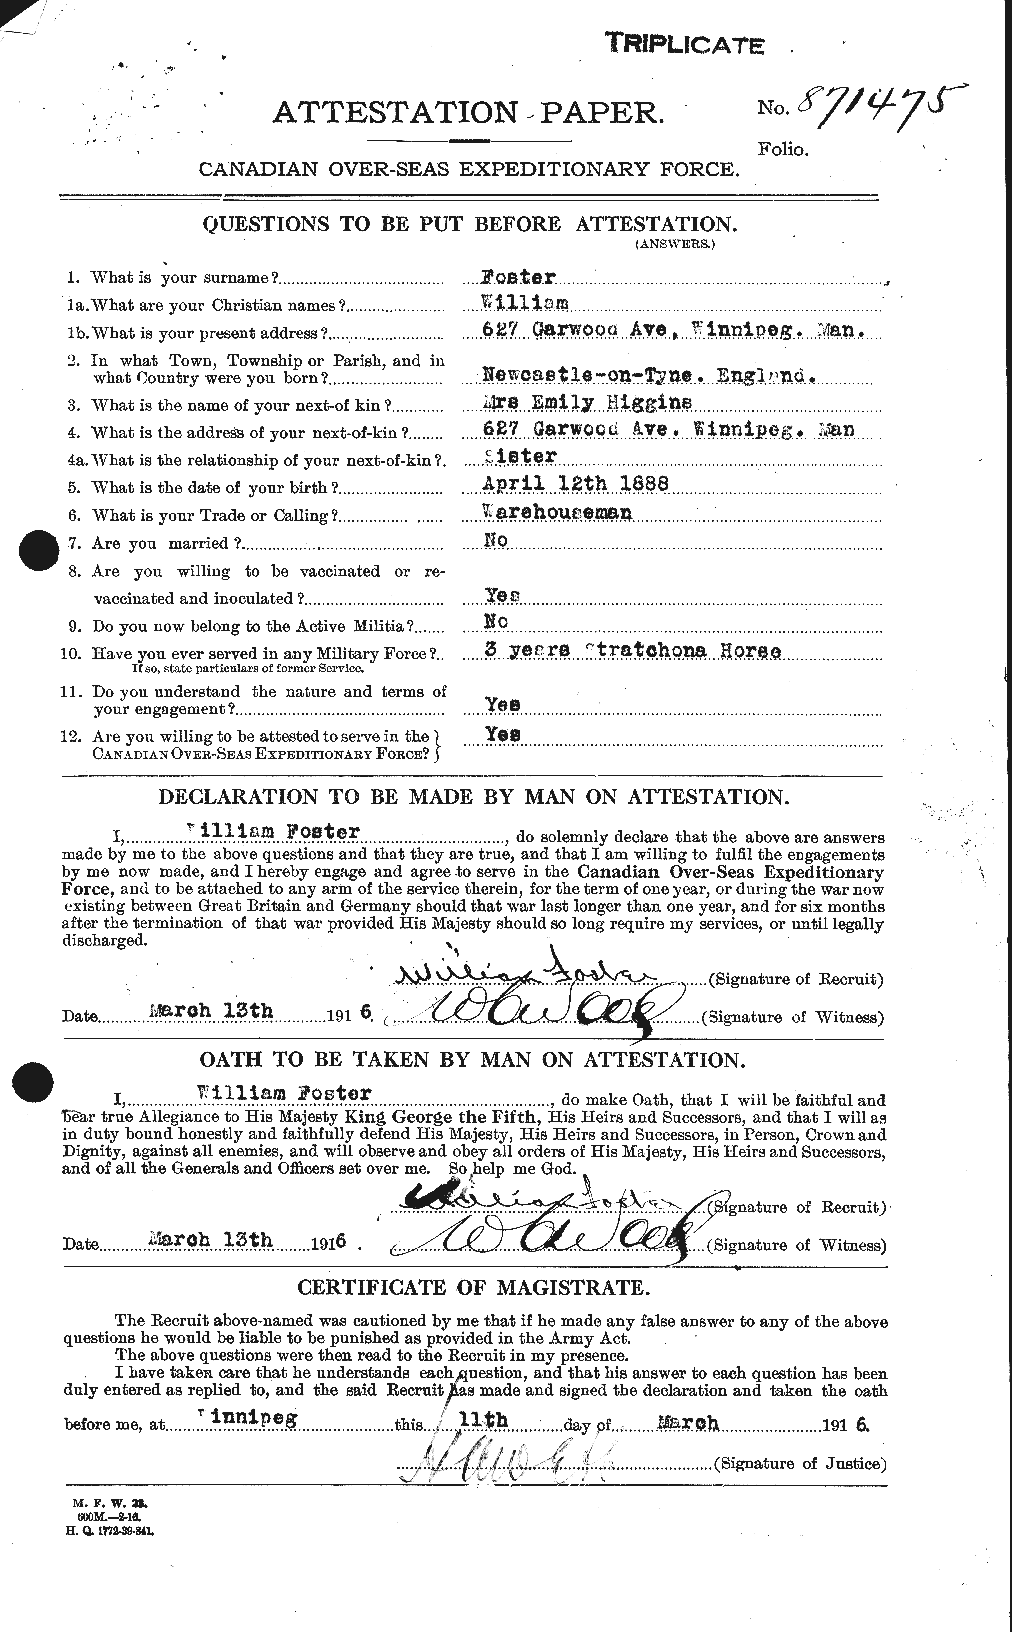 Dossiers du Personnel de la Première Guerre mondiale - CEC 328714a